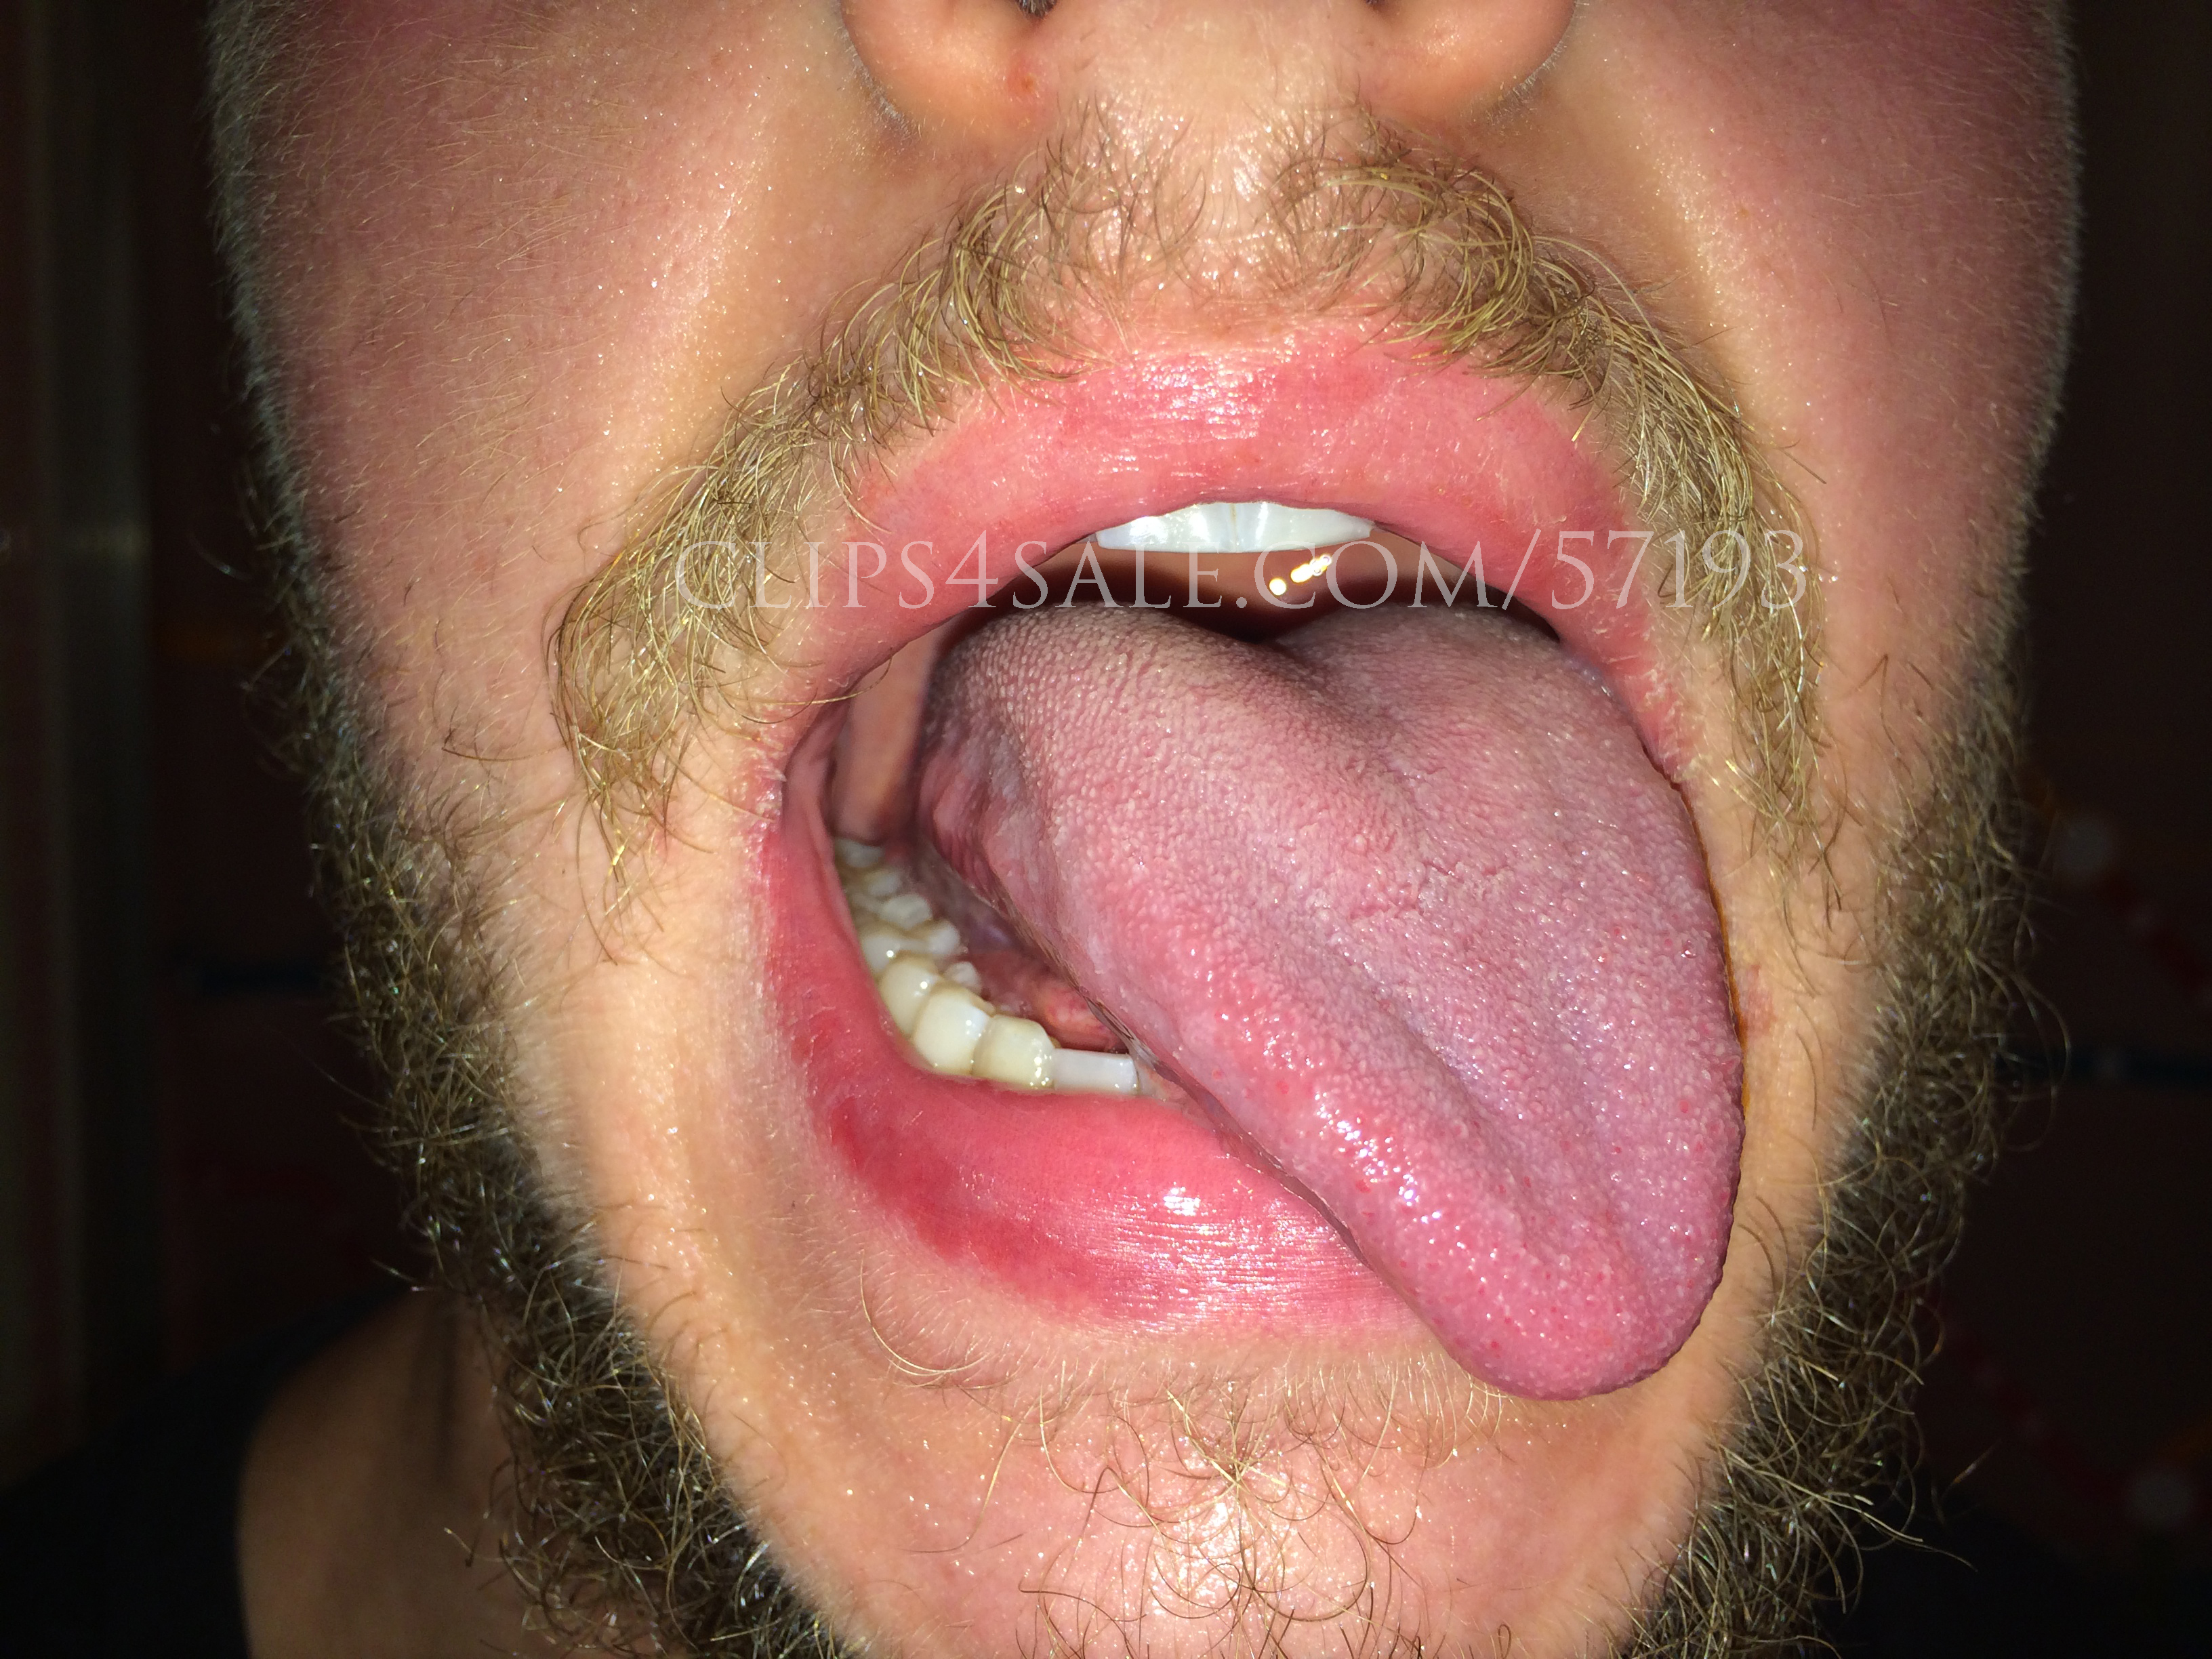 Tongueandspit